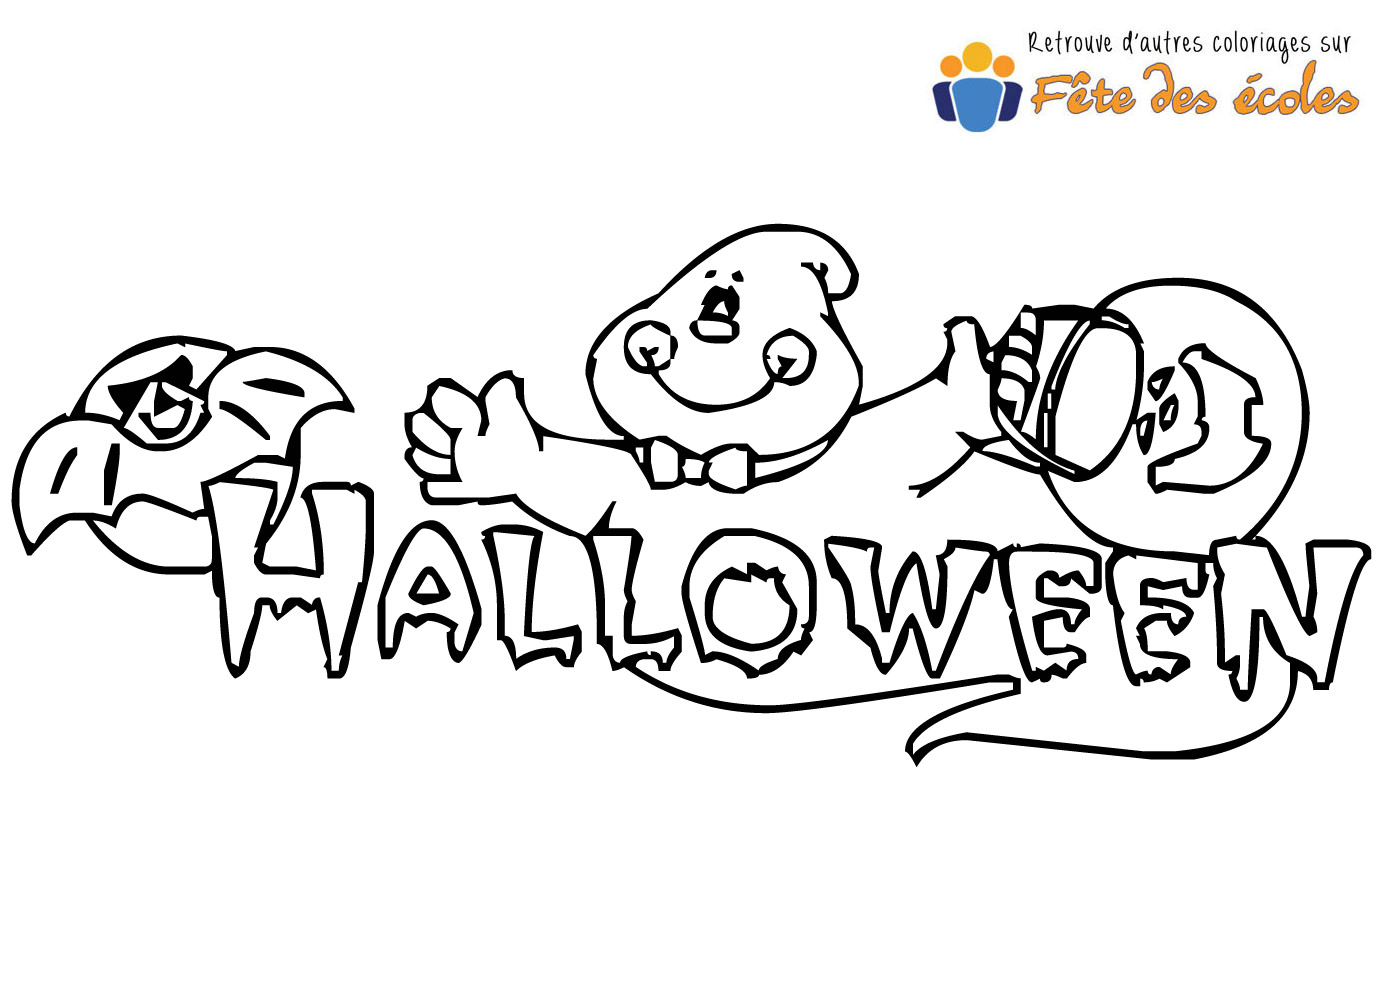 Un fantôme part à la chasse aux bonbons lors d'Halloween en coloriage